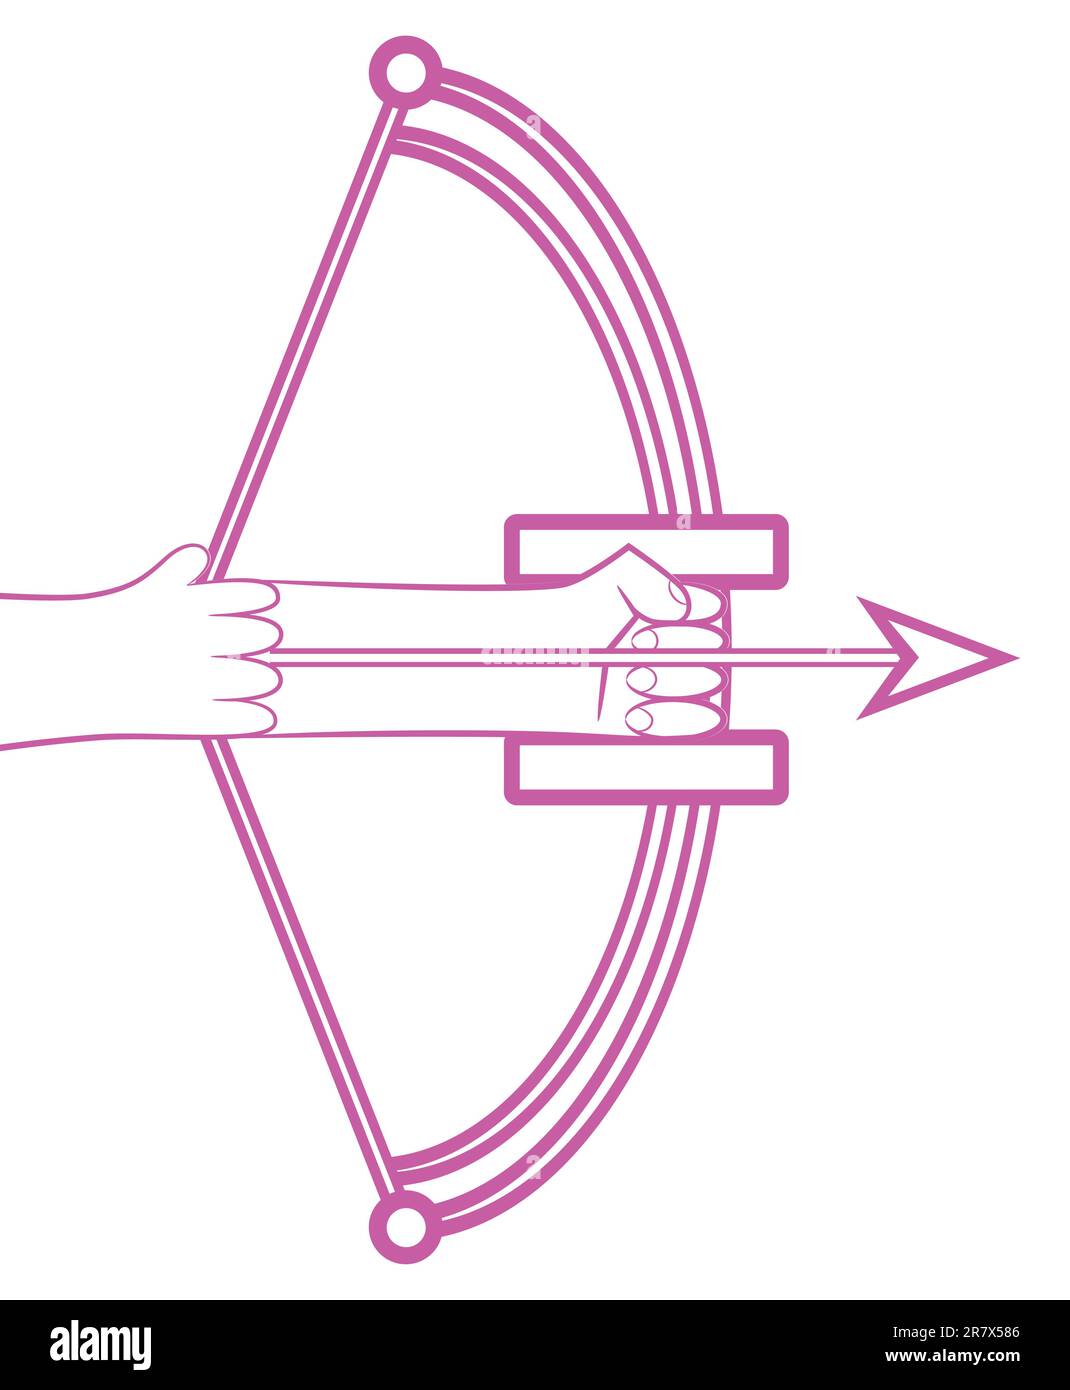 Segno zodiacale logo sagittario, icona stile mano persone con arco isolato su sfondo bianco. Illustrazione Vettoriale